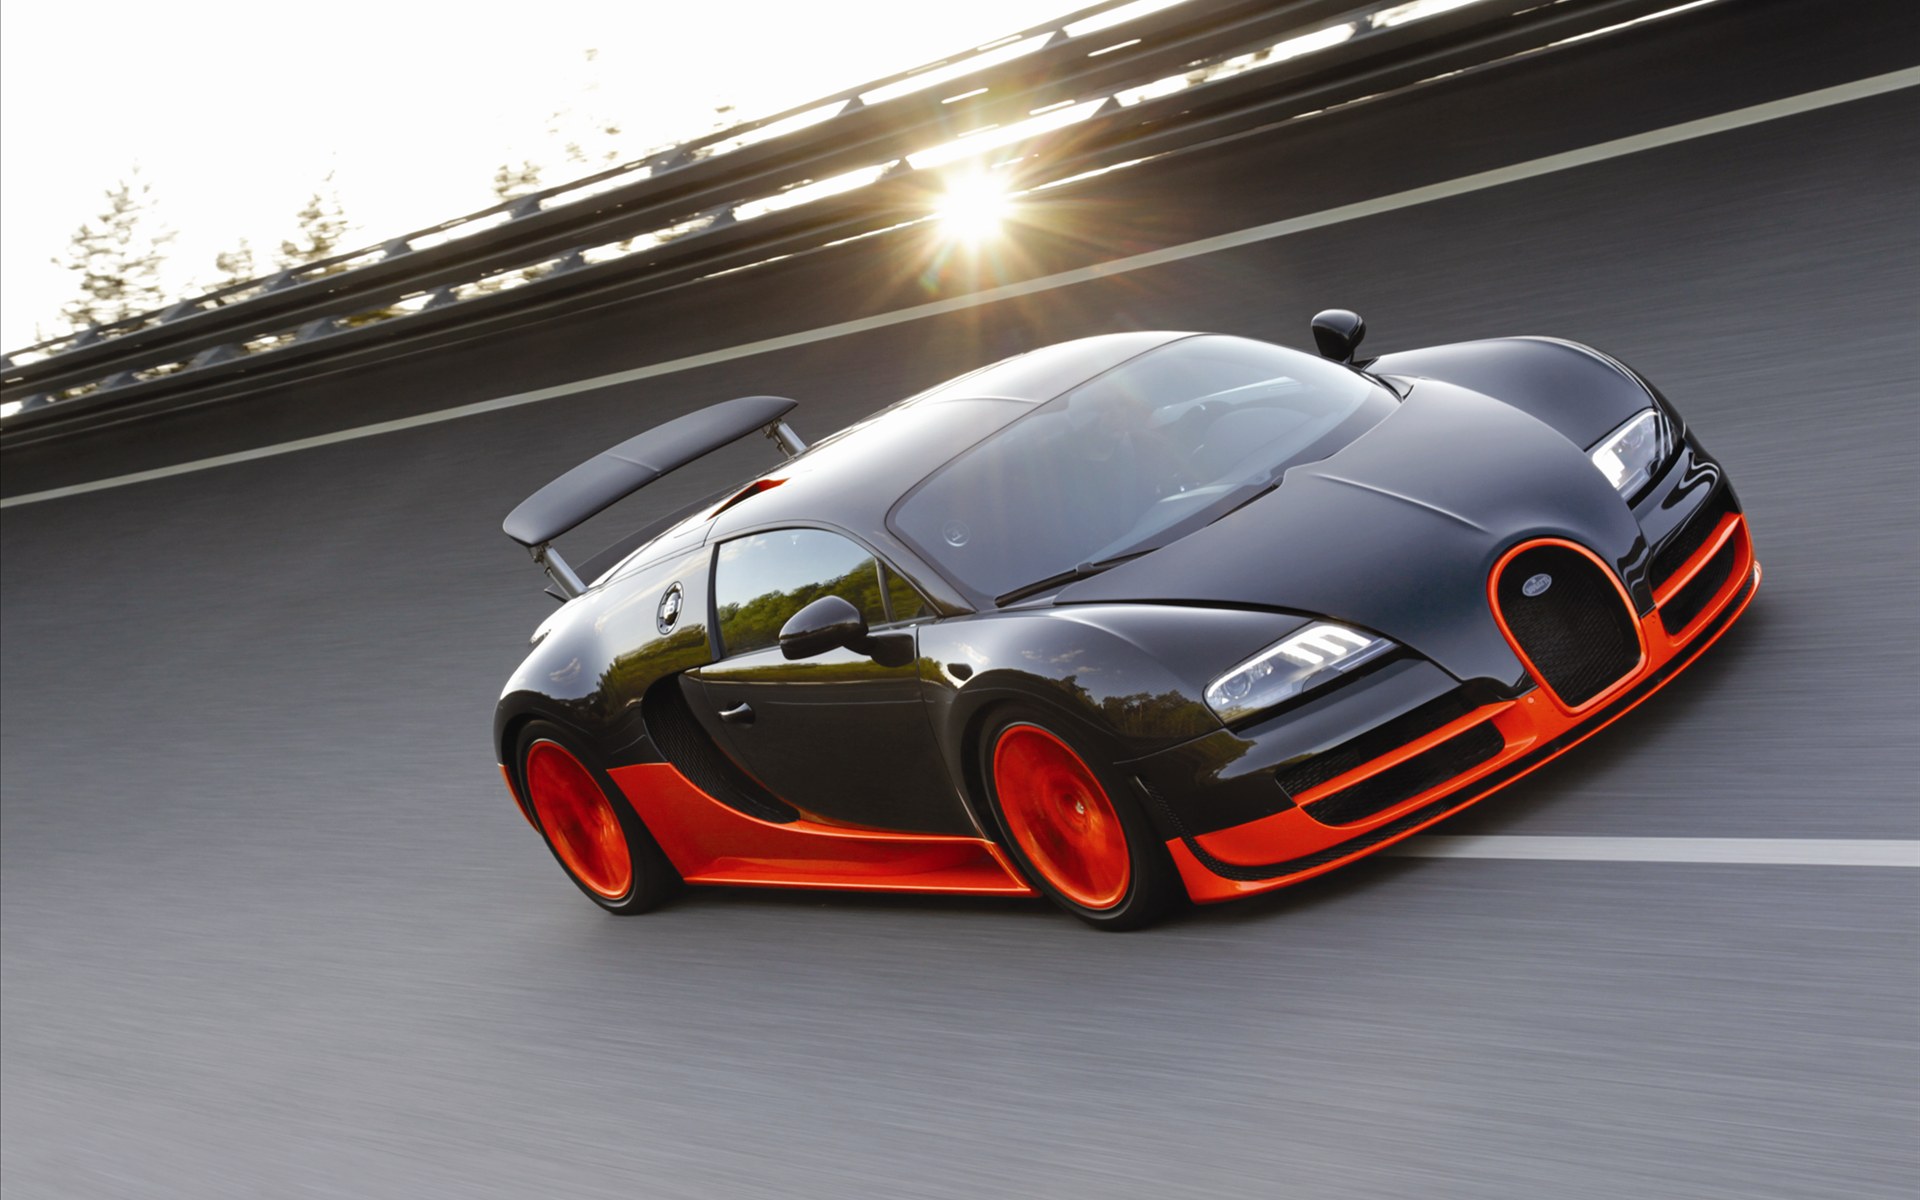 Bugatti Veyron(ӵ) 16.4 Super Sports Car 2011(ֽ19)